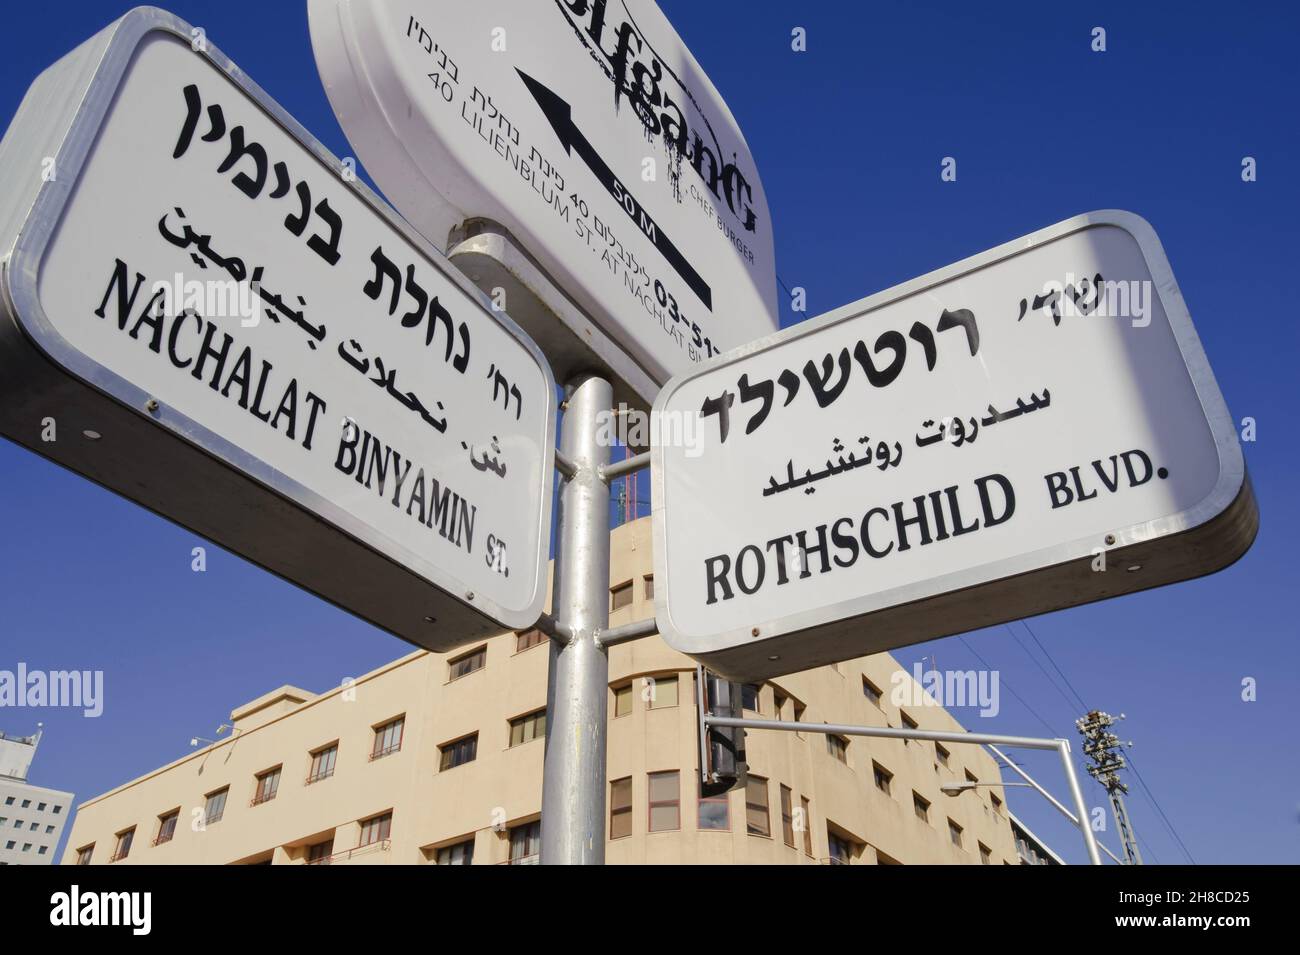 Straßenschilder auf Hebräisch, Arabisch und Englisch, Israel, Tel Aviv Stockfoto